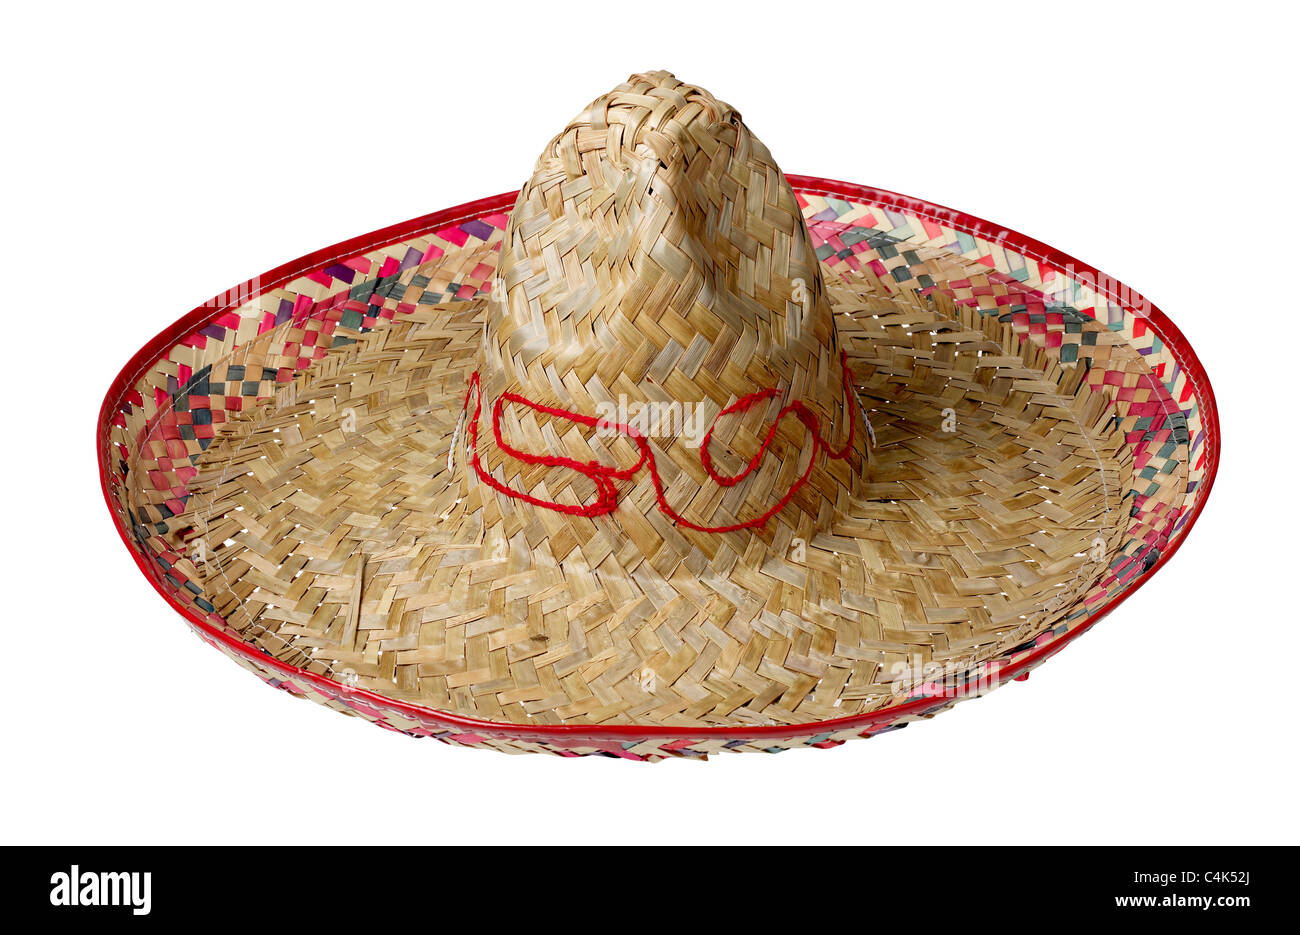 Sombrero straw hat Stock Photo